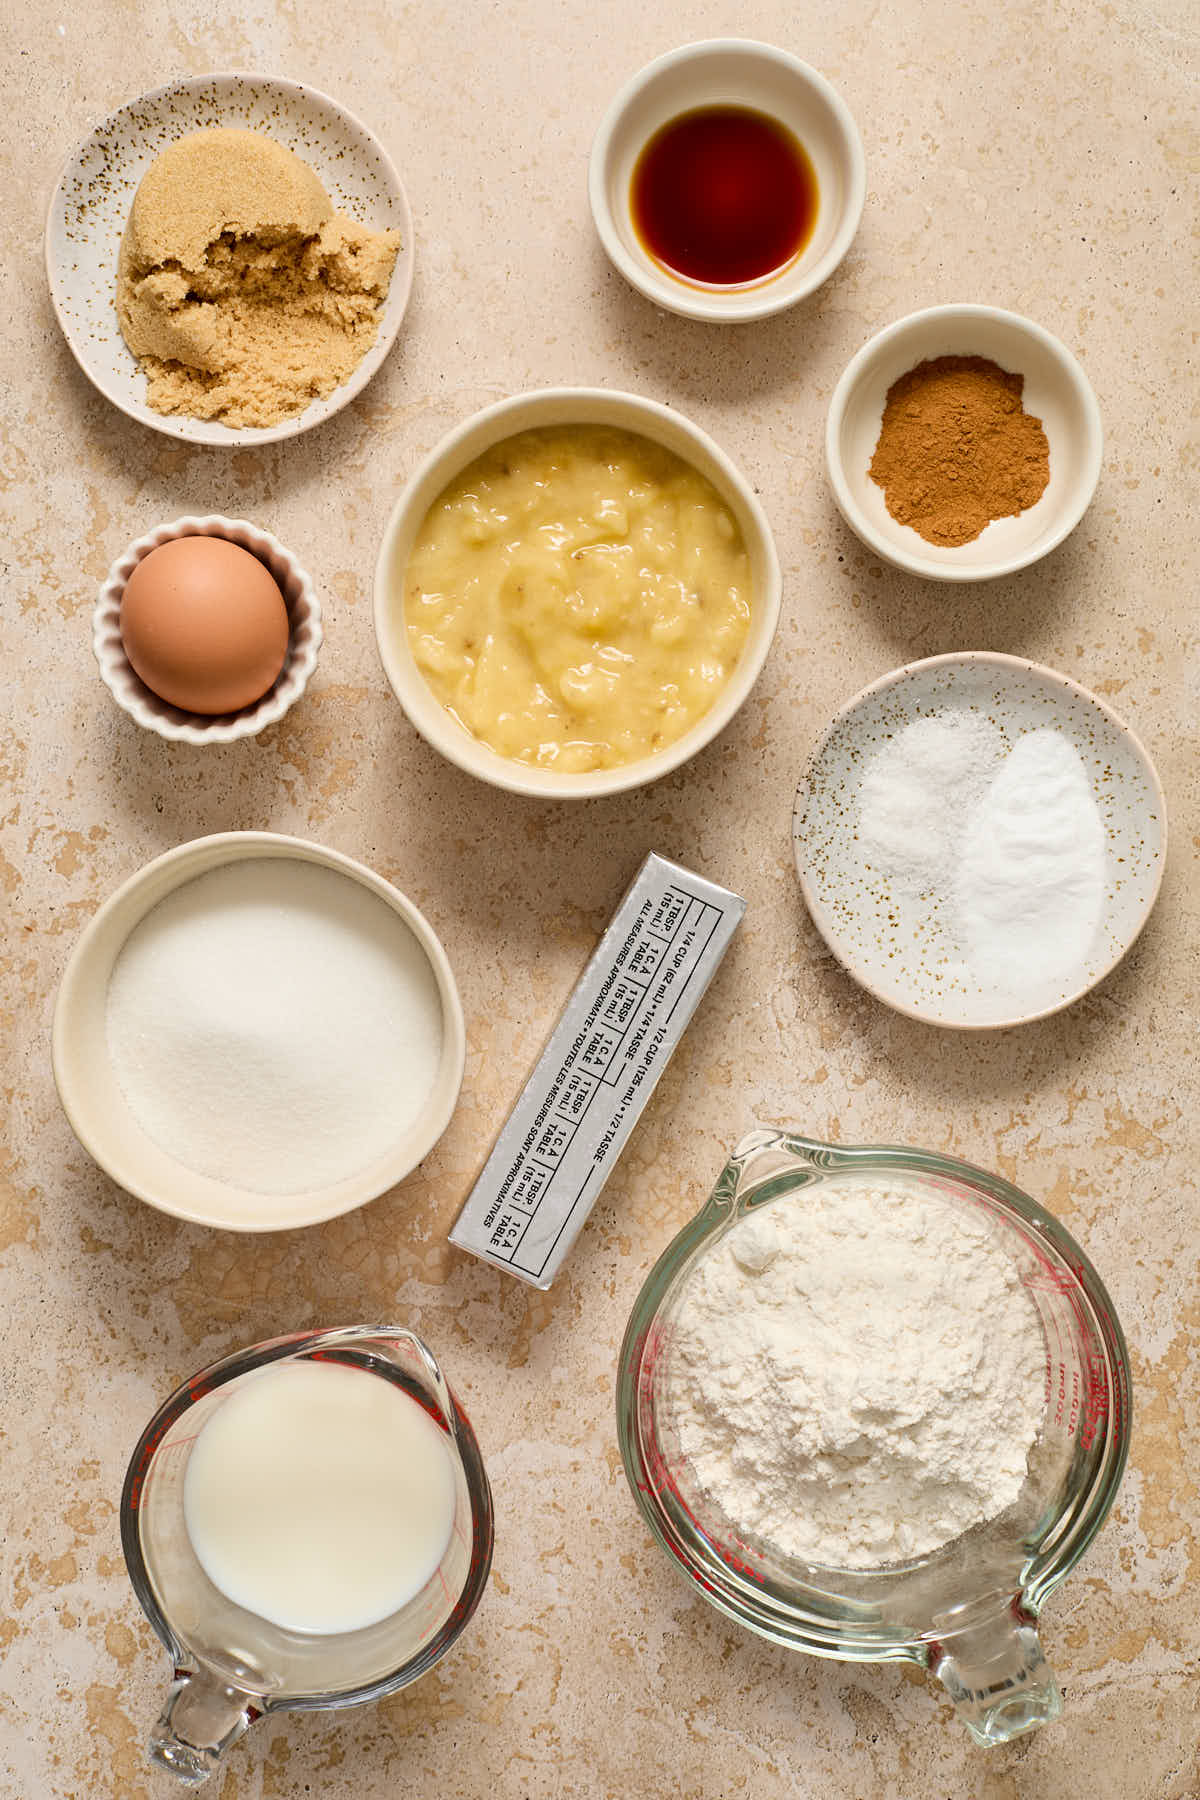 Ingredients to make banana cake arranged in individual bowls.